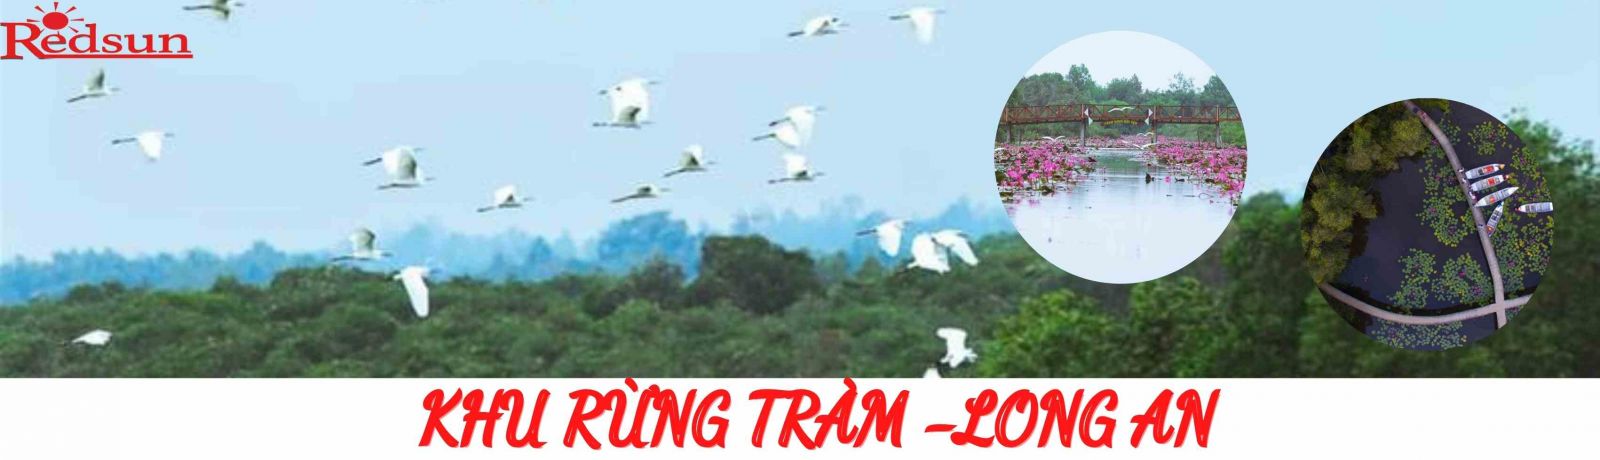 du- lich- rung -tram -tai-long -an - 01- ngay-cung-red-sun